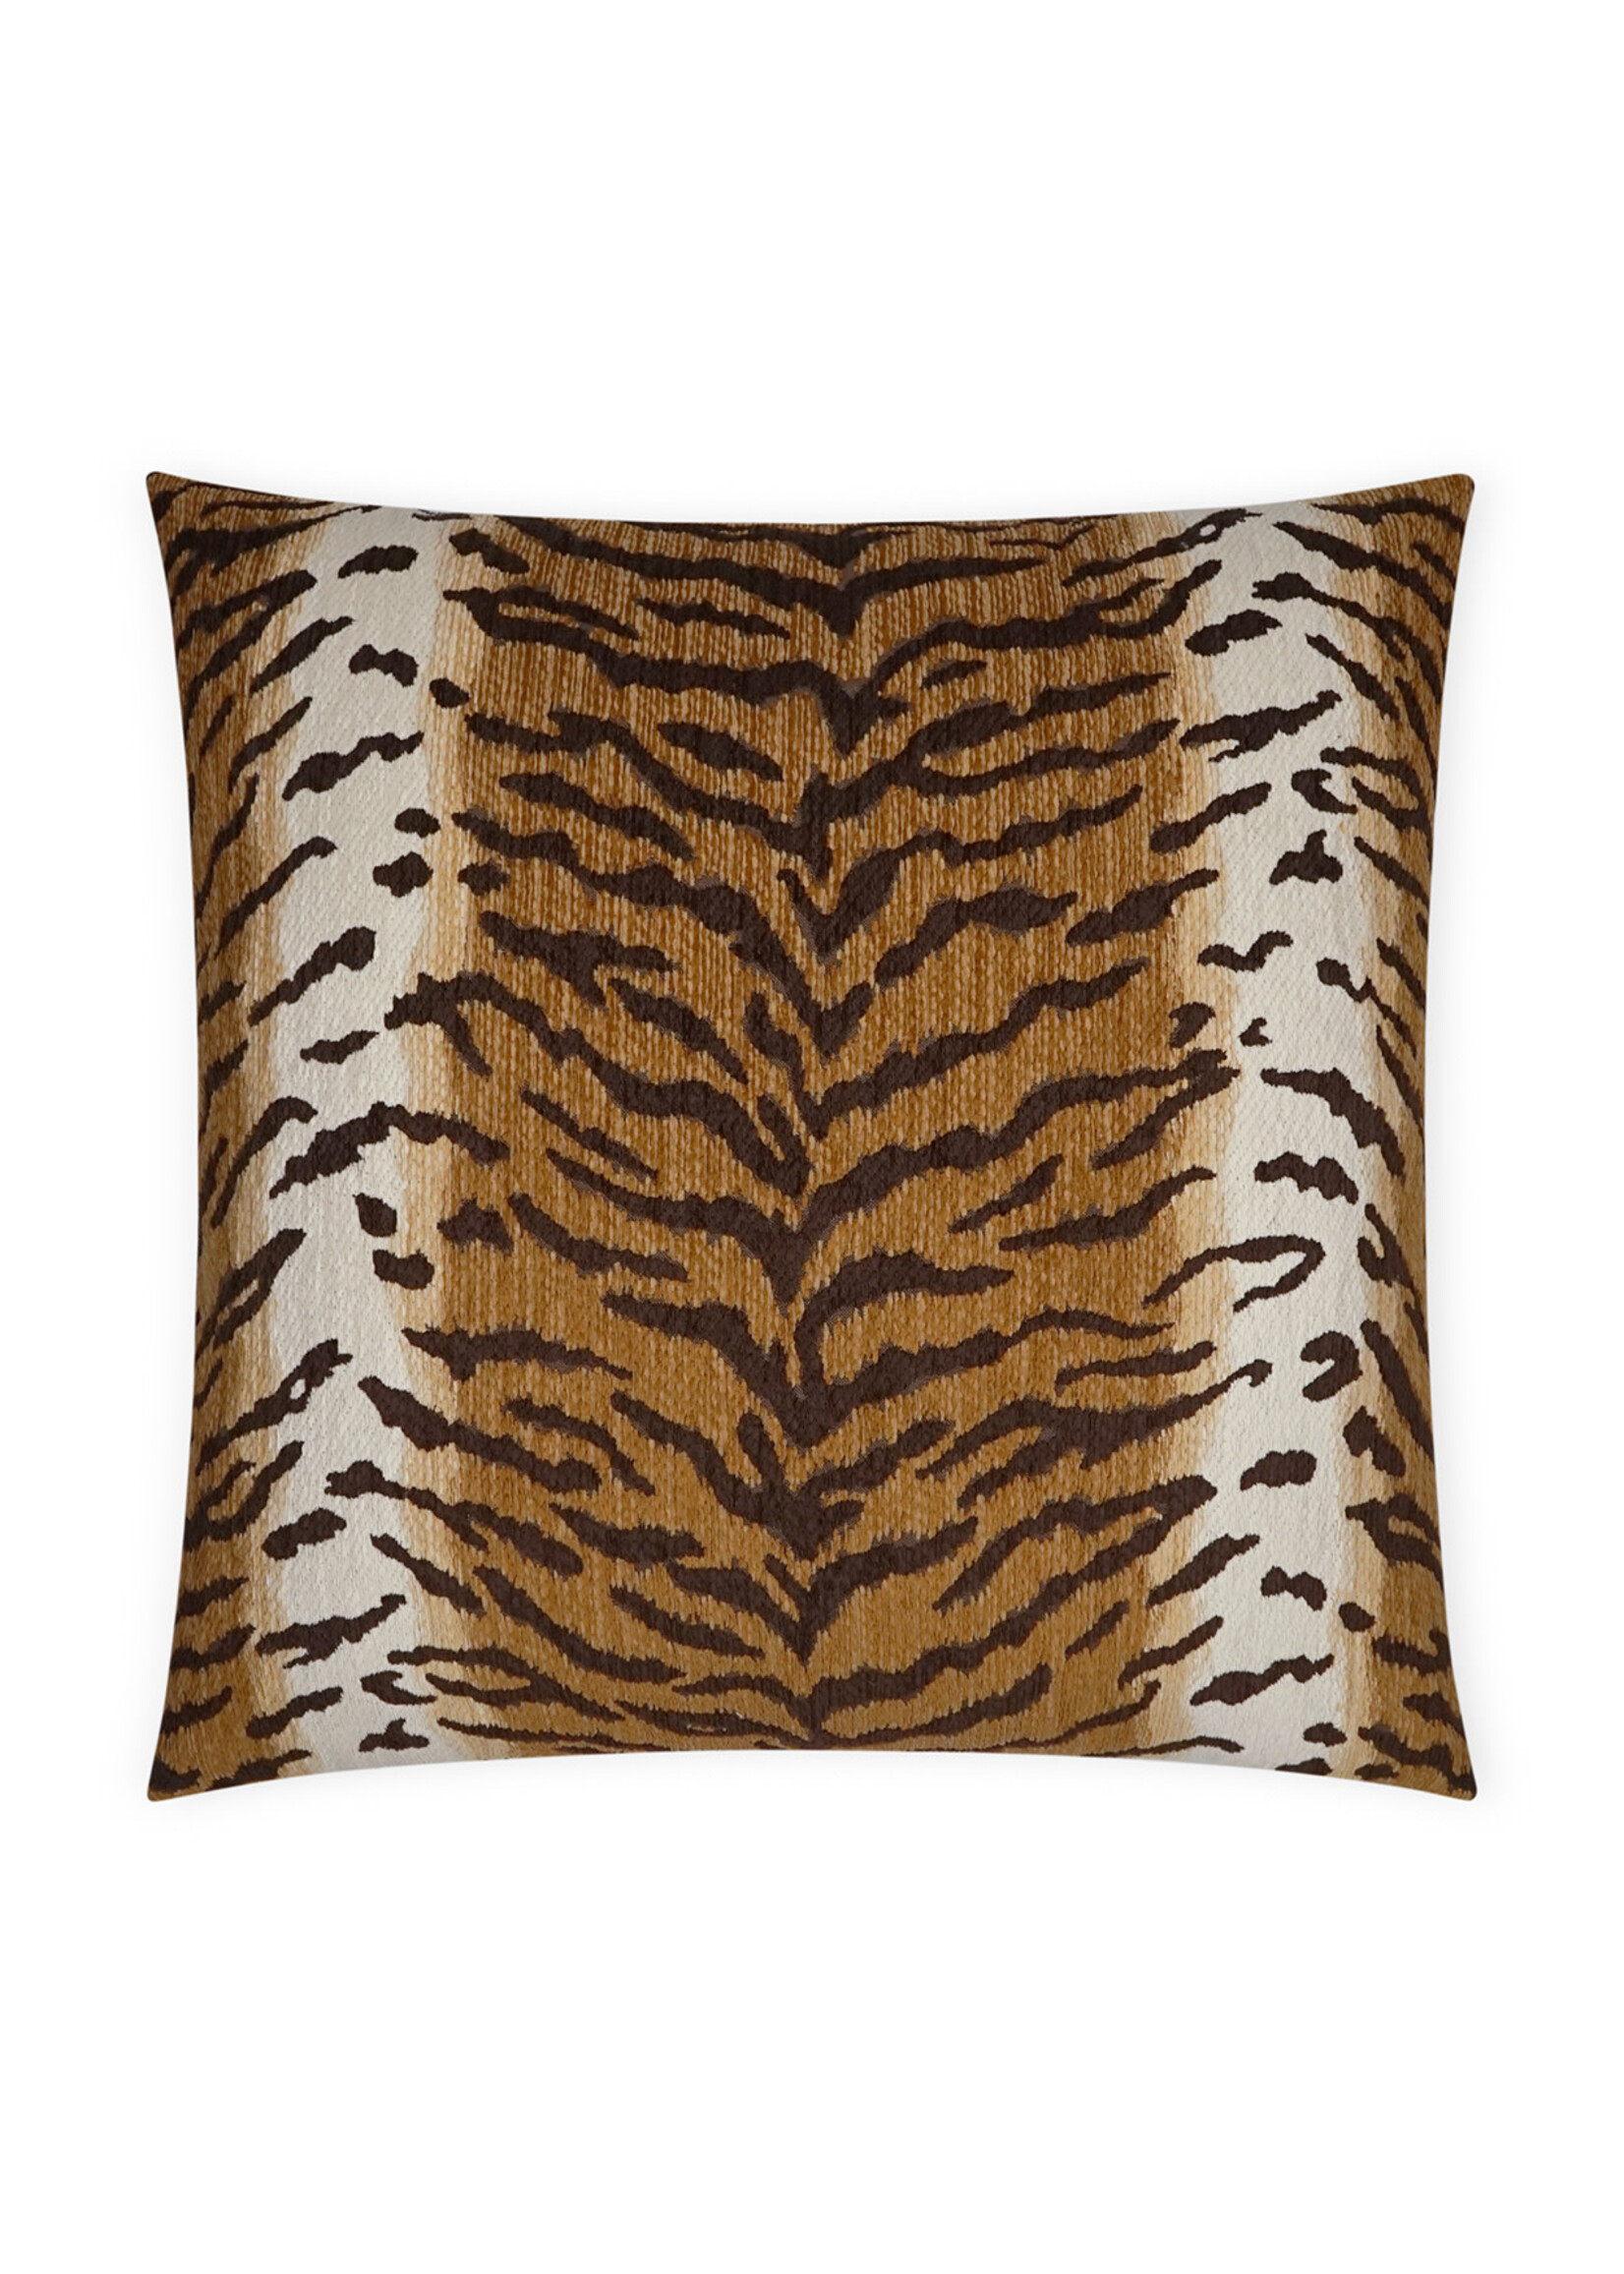 DV Kapp Calabar Tiger Stripe Throw Pillow, 20x20